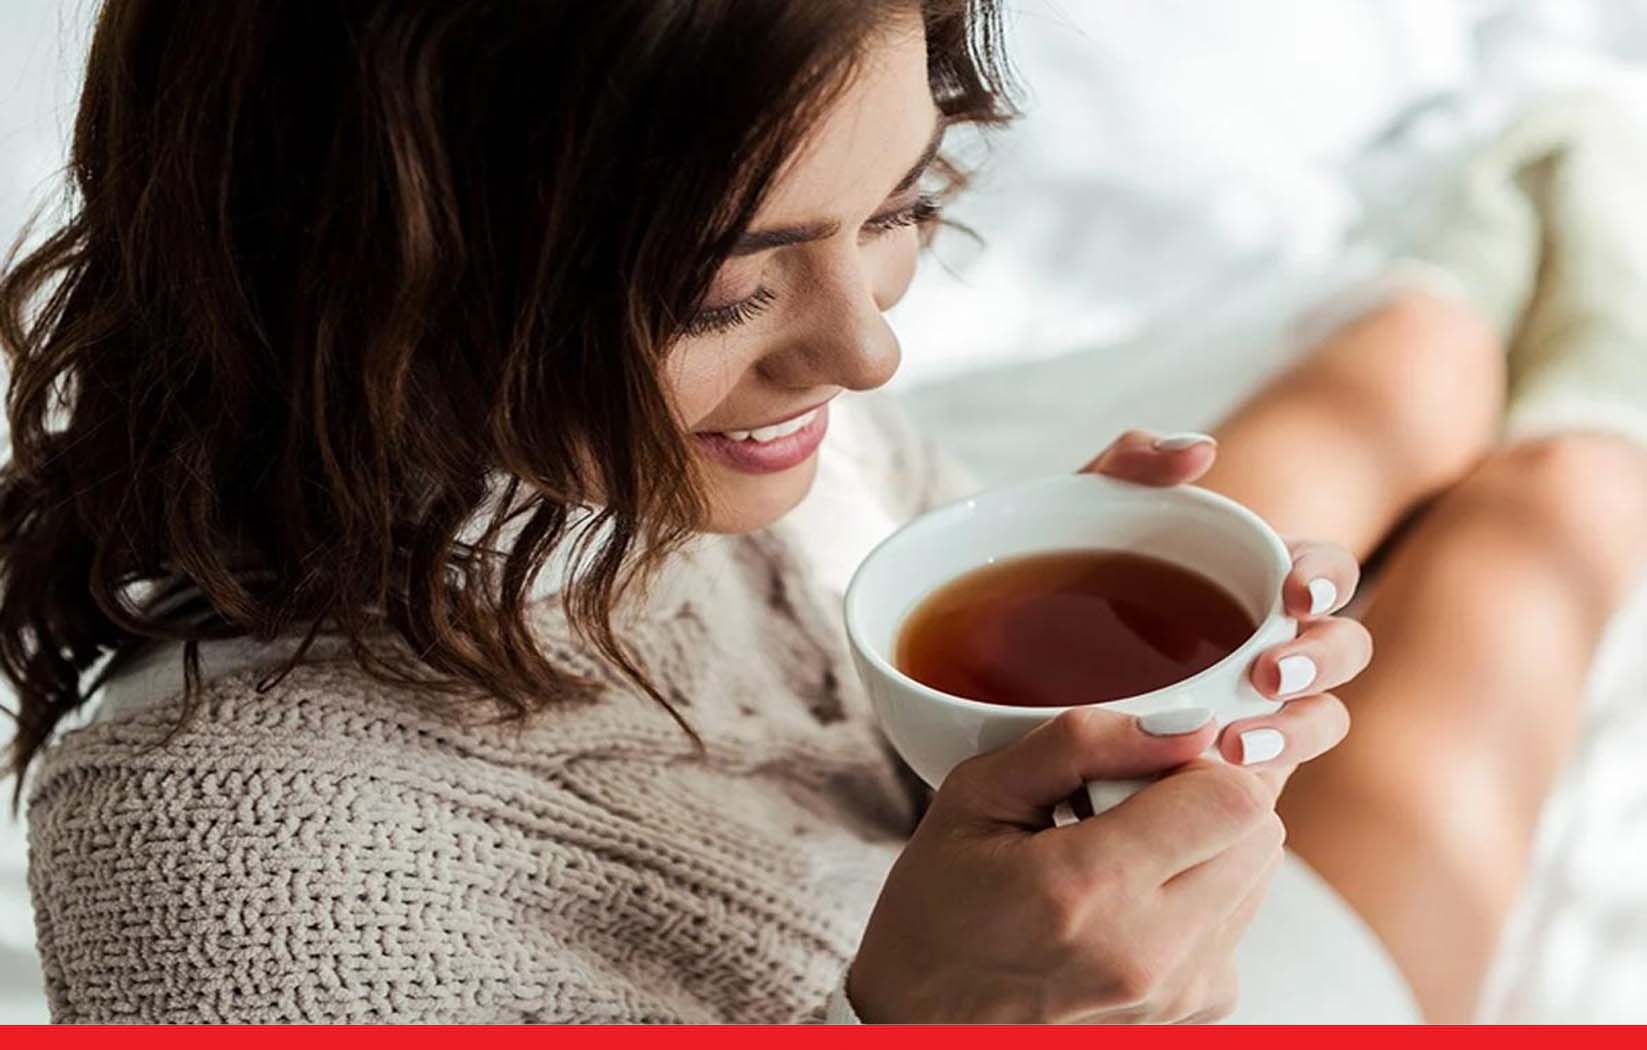 सर्दी में कॉफी या चाय की क्रेविंग बढ़ गई है तो सतर्क हो जाएं